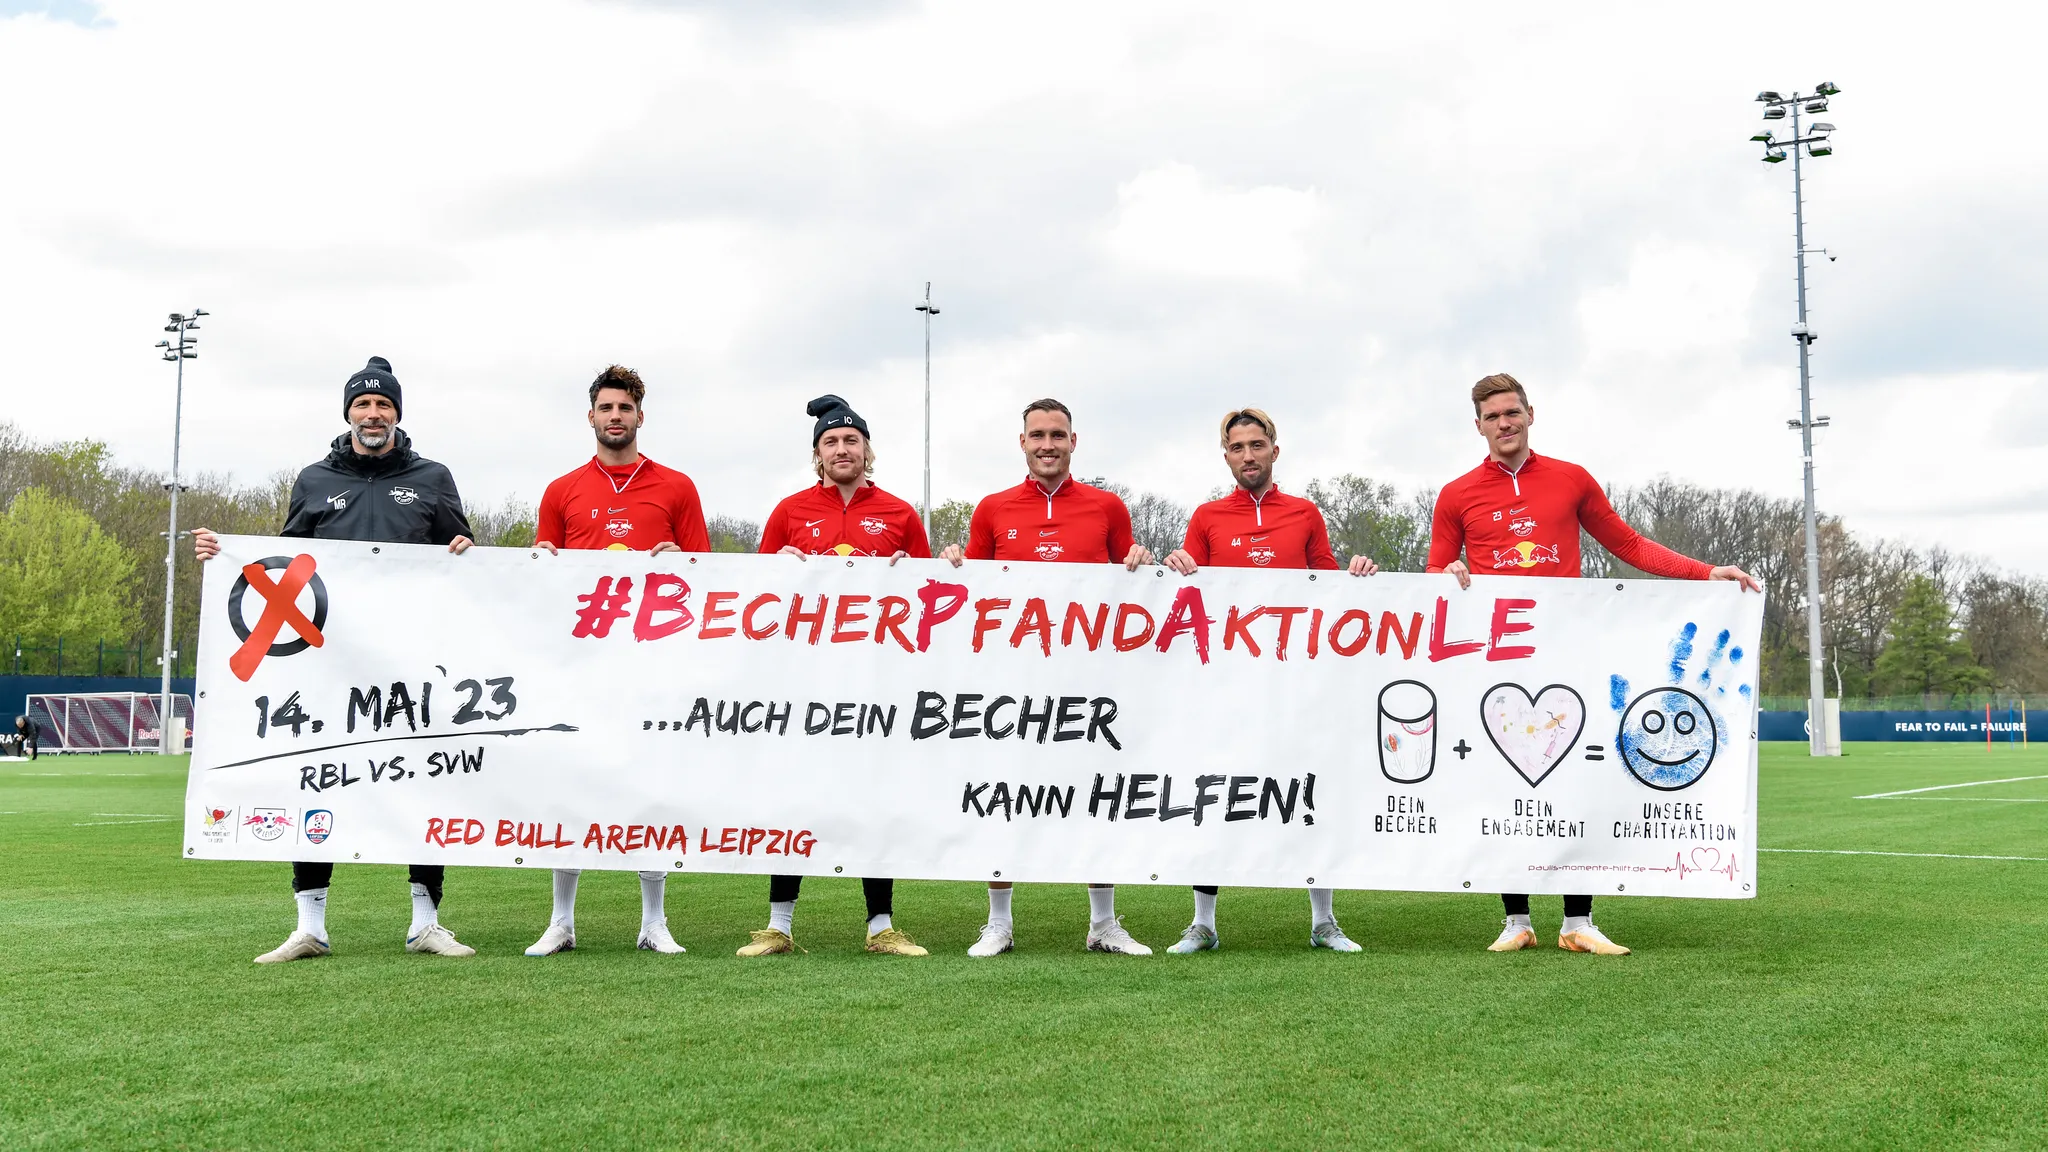 Spieler von RB Leipzig halten ein Plakat zur Becherpfandaktion hoch.